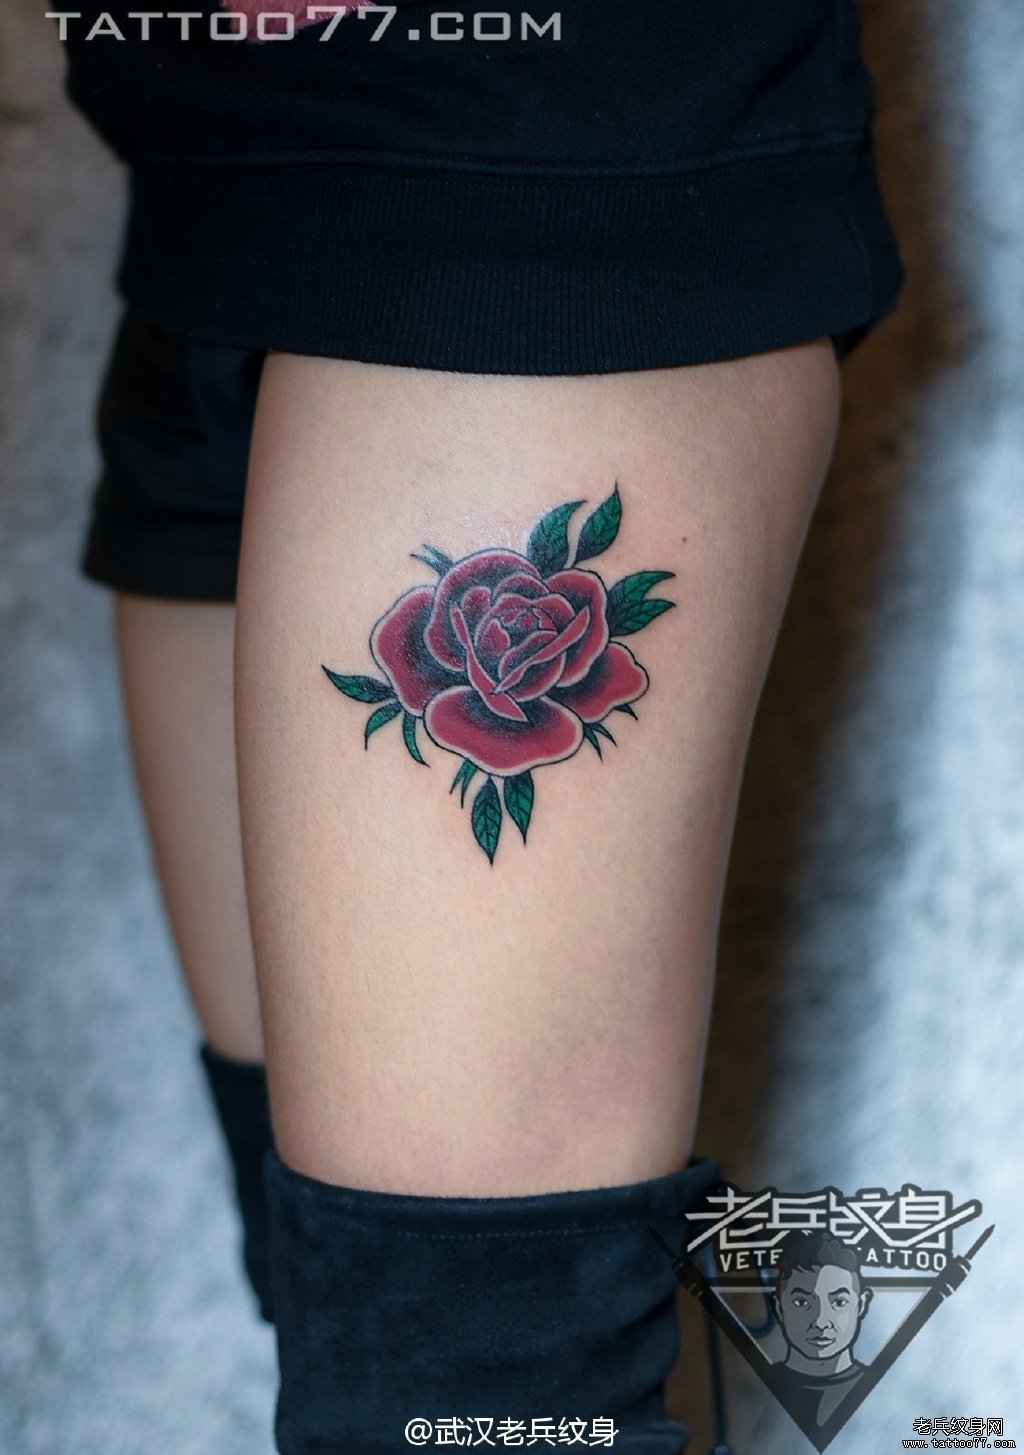 大腿玫瑰花纹身图案作品